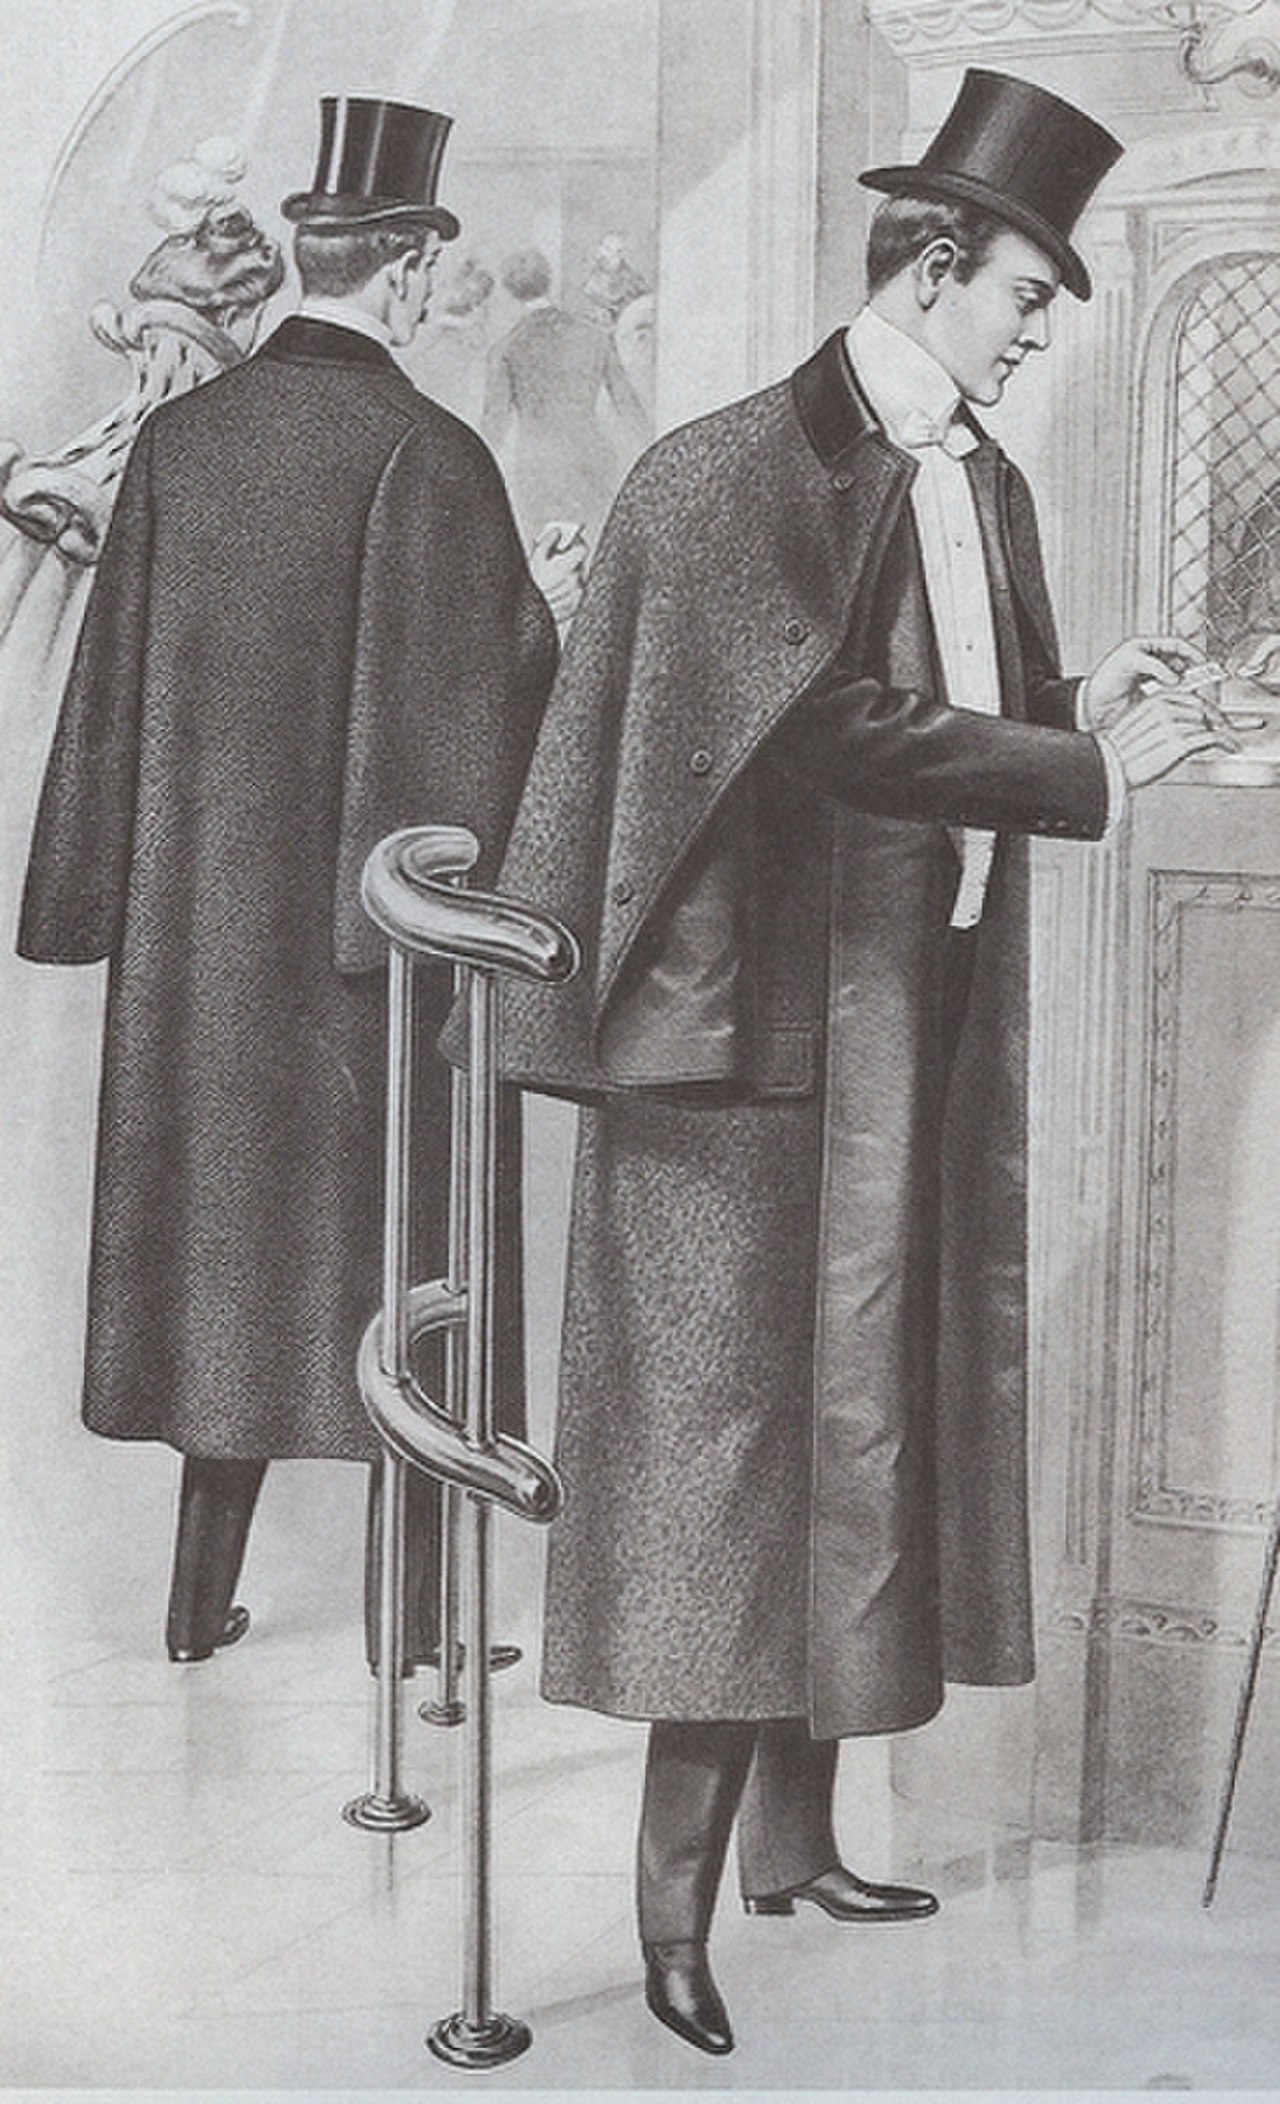 Пальто 19 века